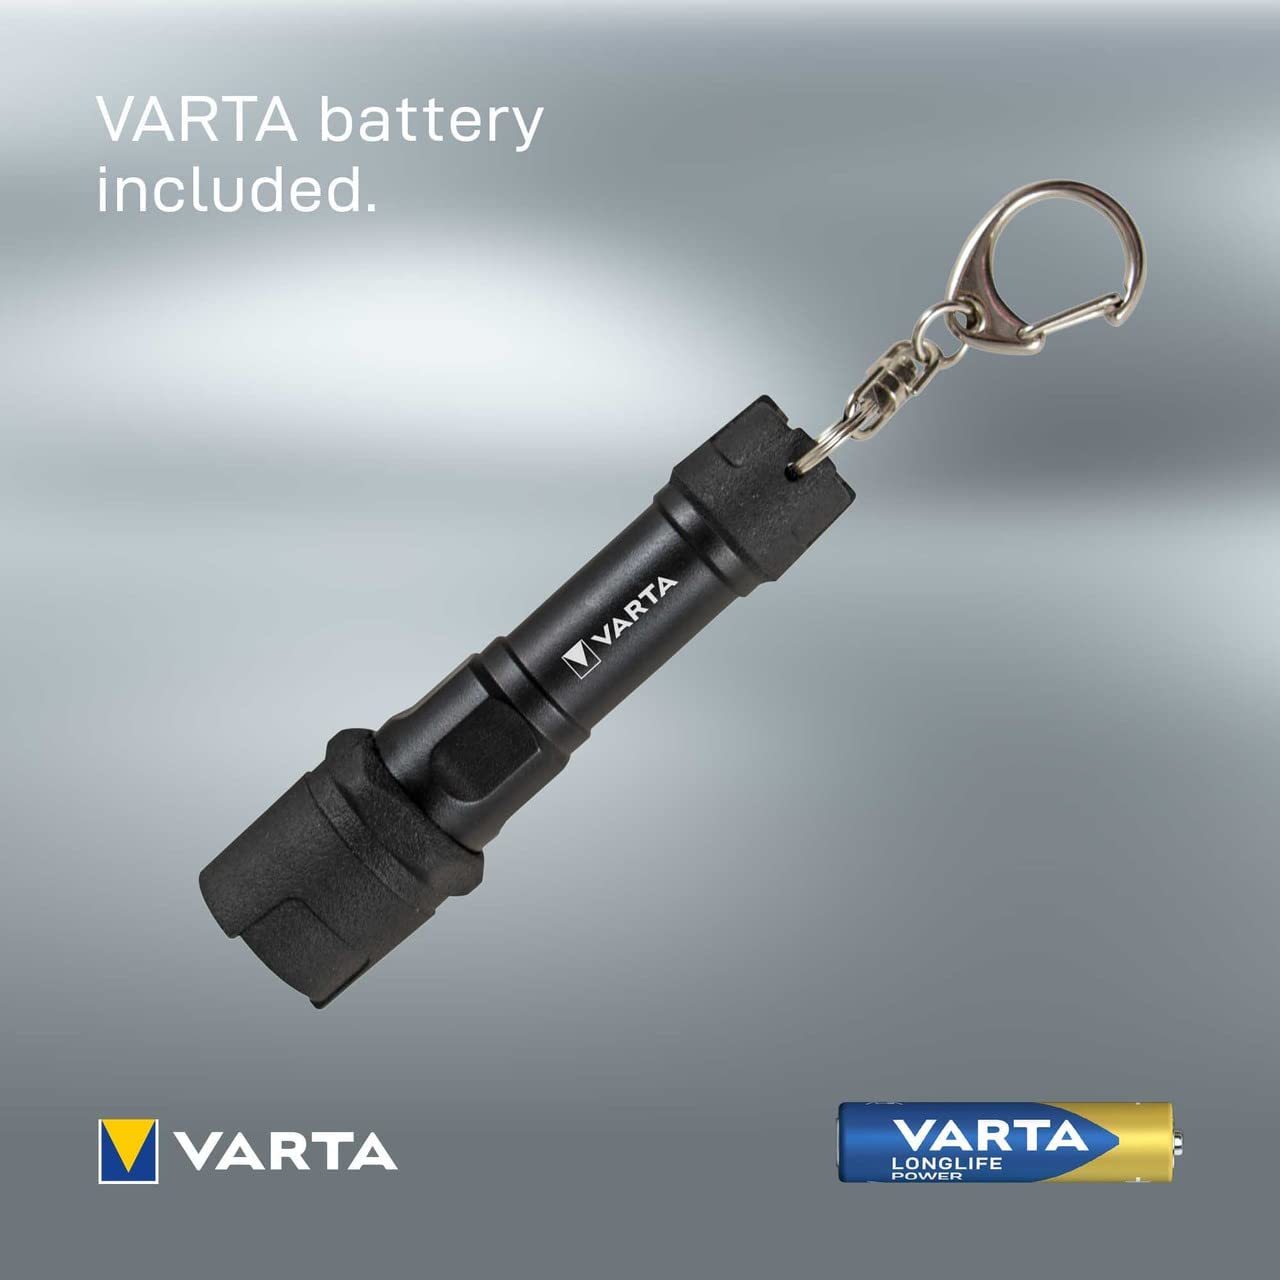 Varta Light Specifications